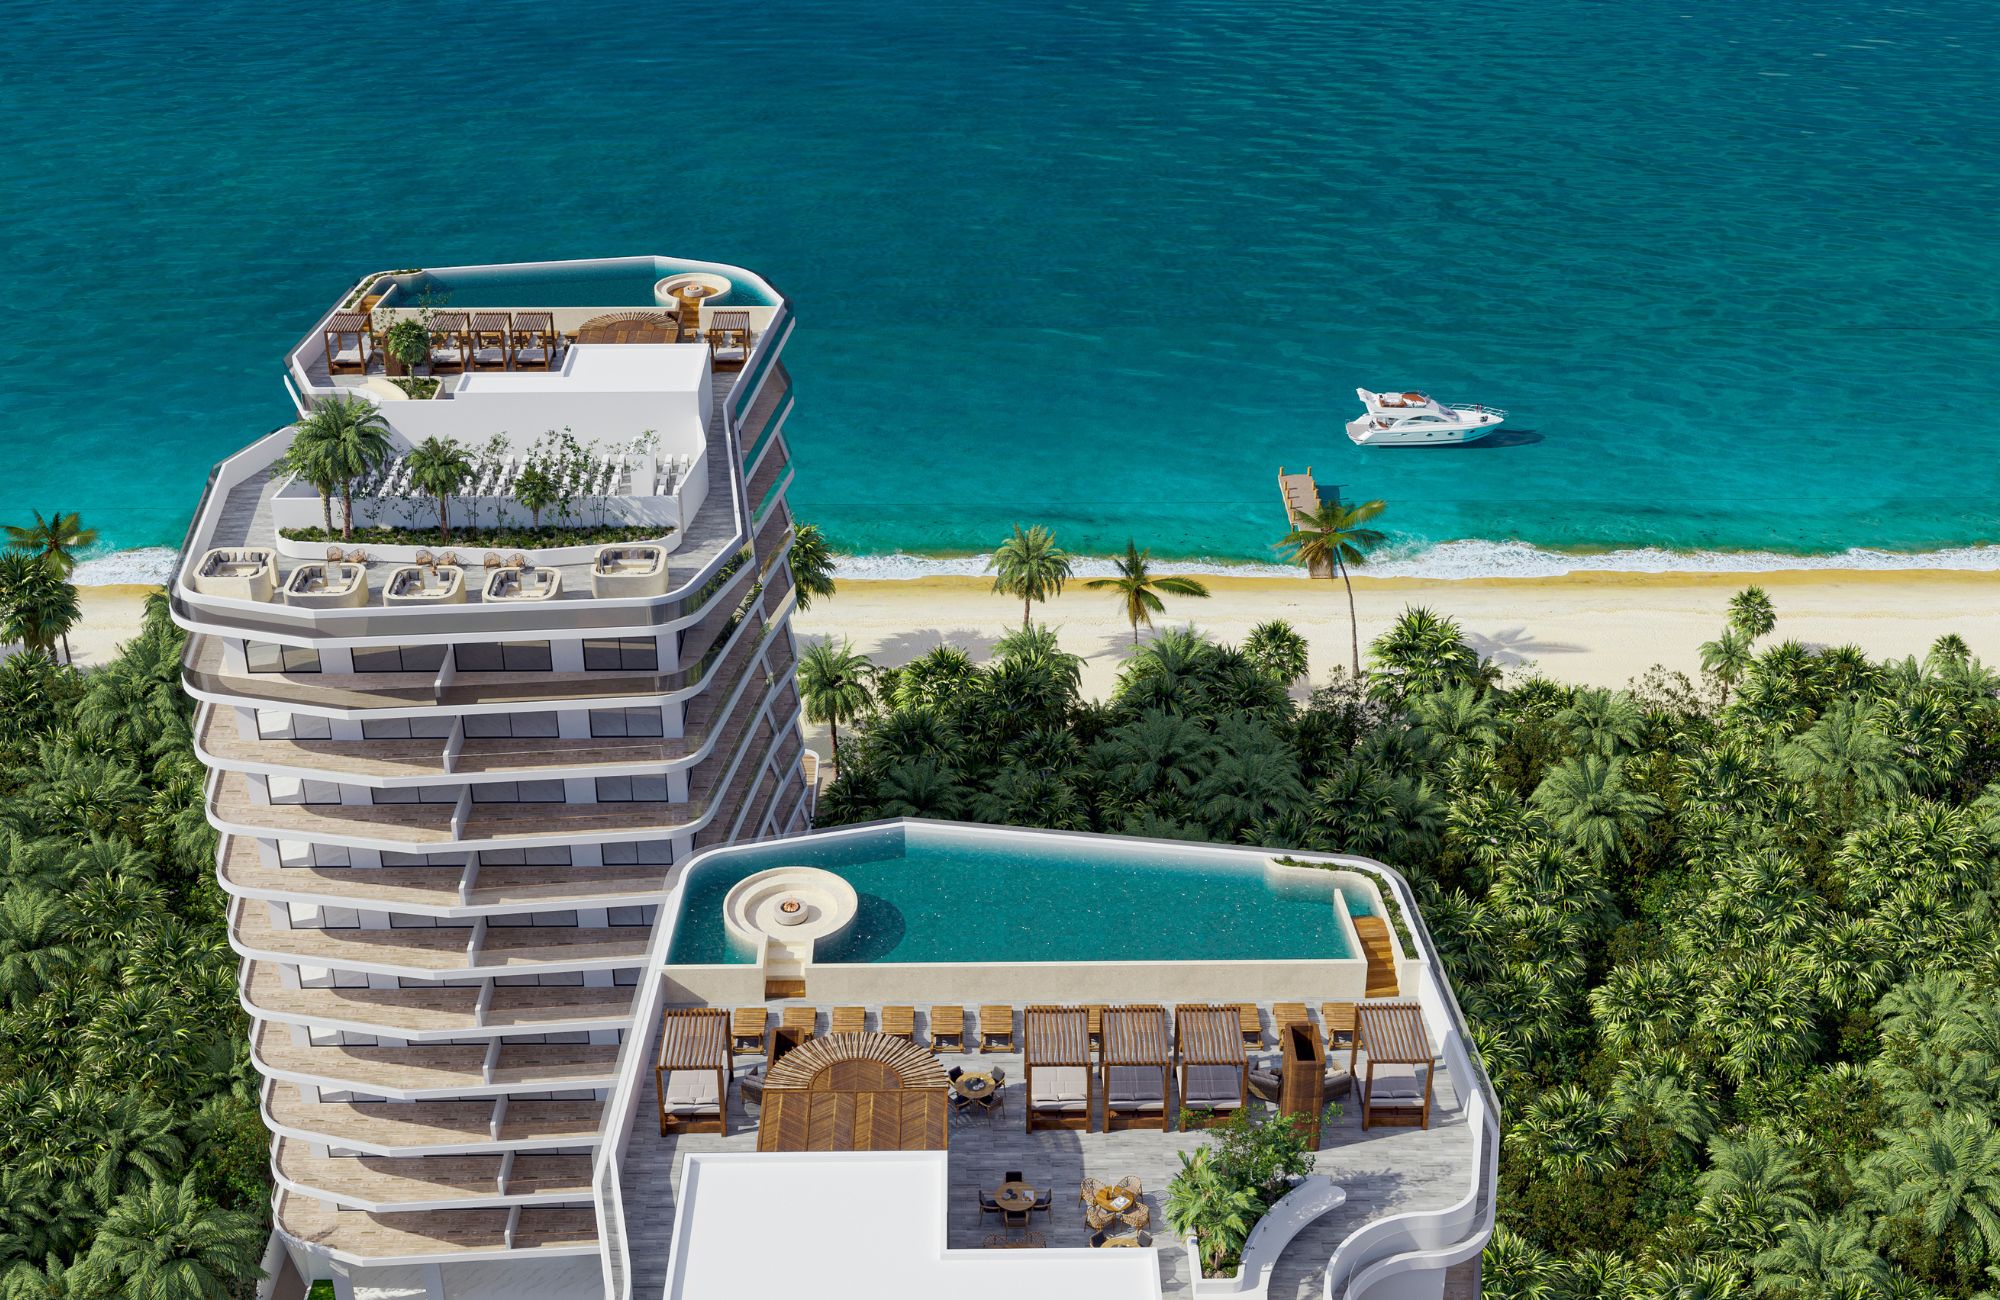 Condominio amplio 214 m2, piso de mármol, en residencial privado, con alberca, gimnasio, area de asador, en venta, Cumbres Cancun.